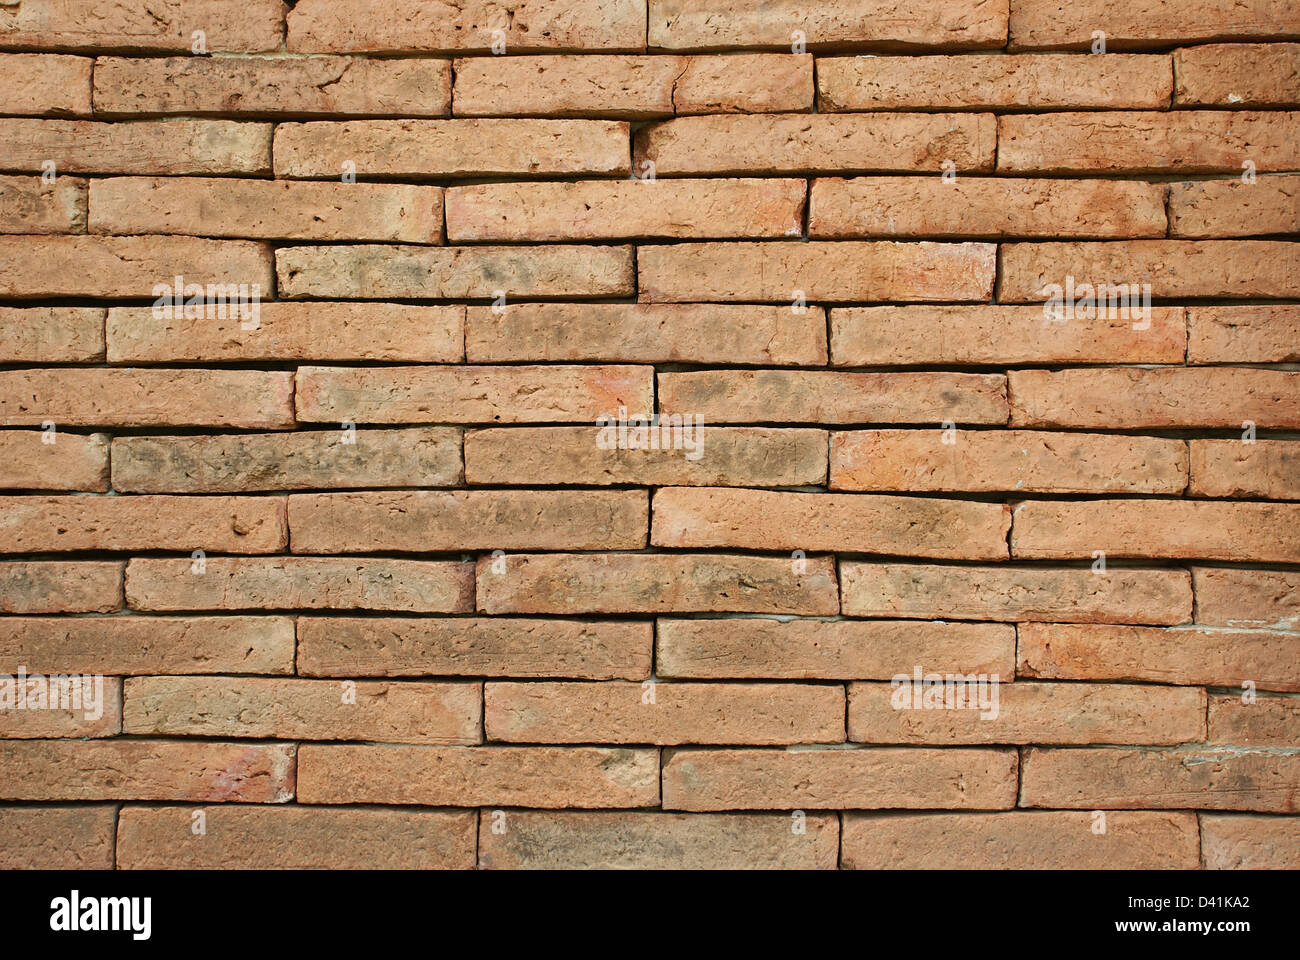 Dettaglio e pattern di muro in mattoni Foto Stock